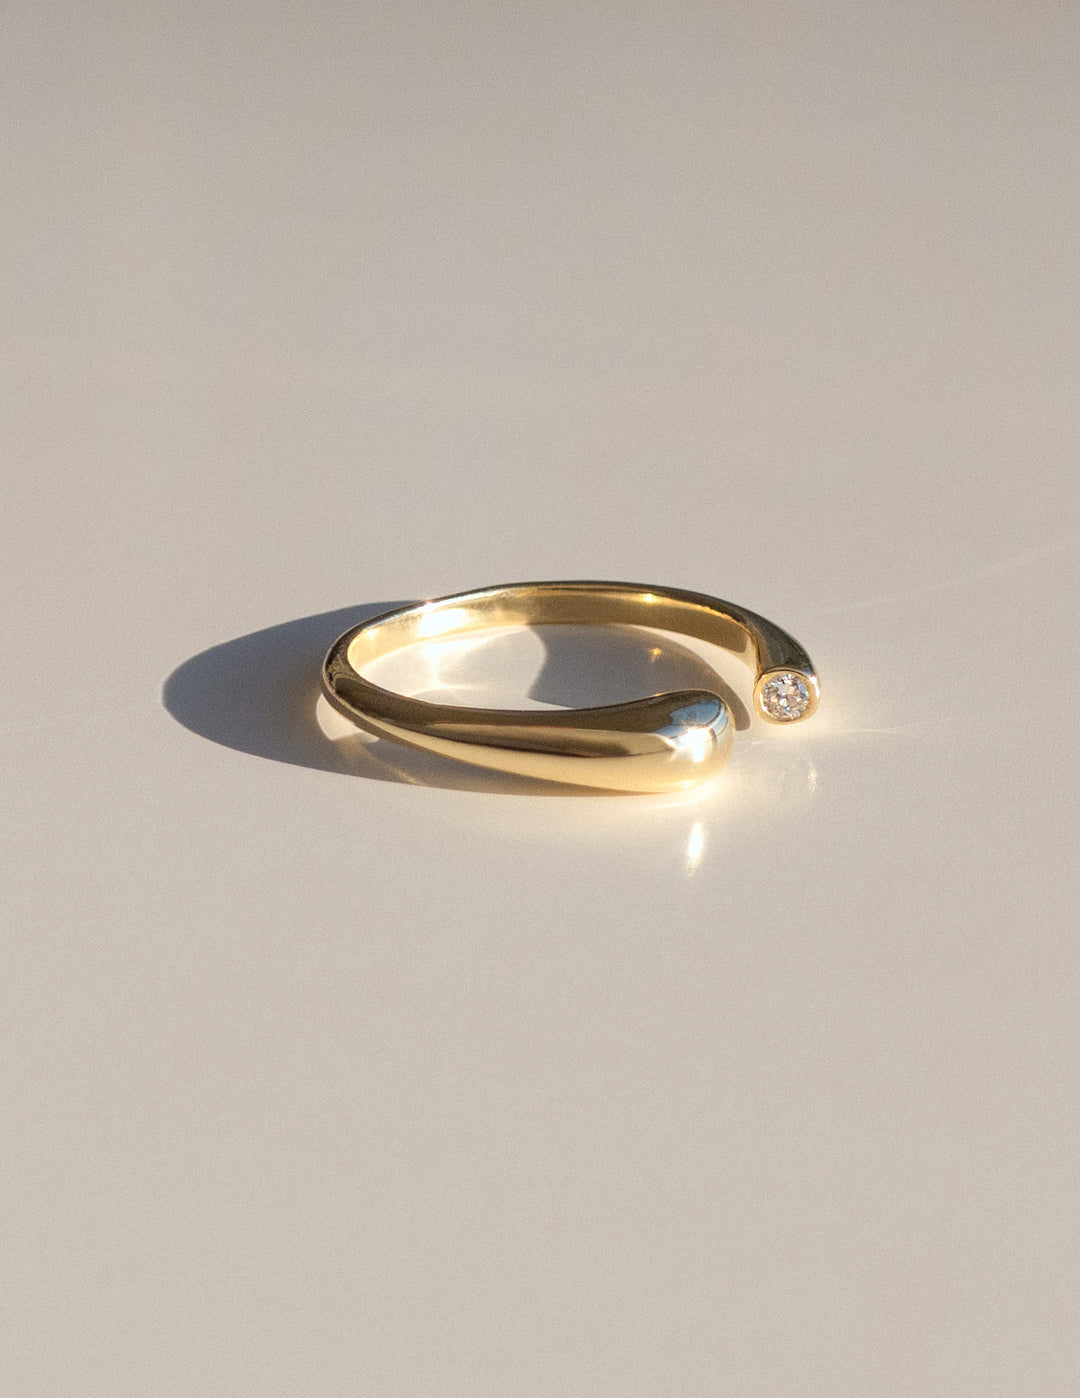 Unique diamond engagement ring Cadette nature inspired diamond engagement ring Cadette water inspired solid gold engagement ring